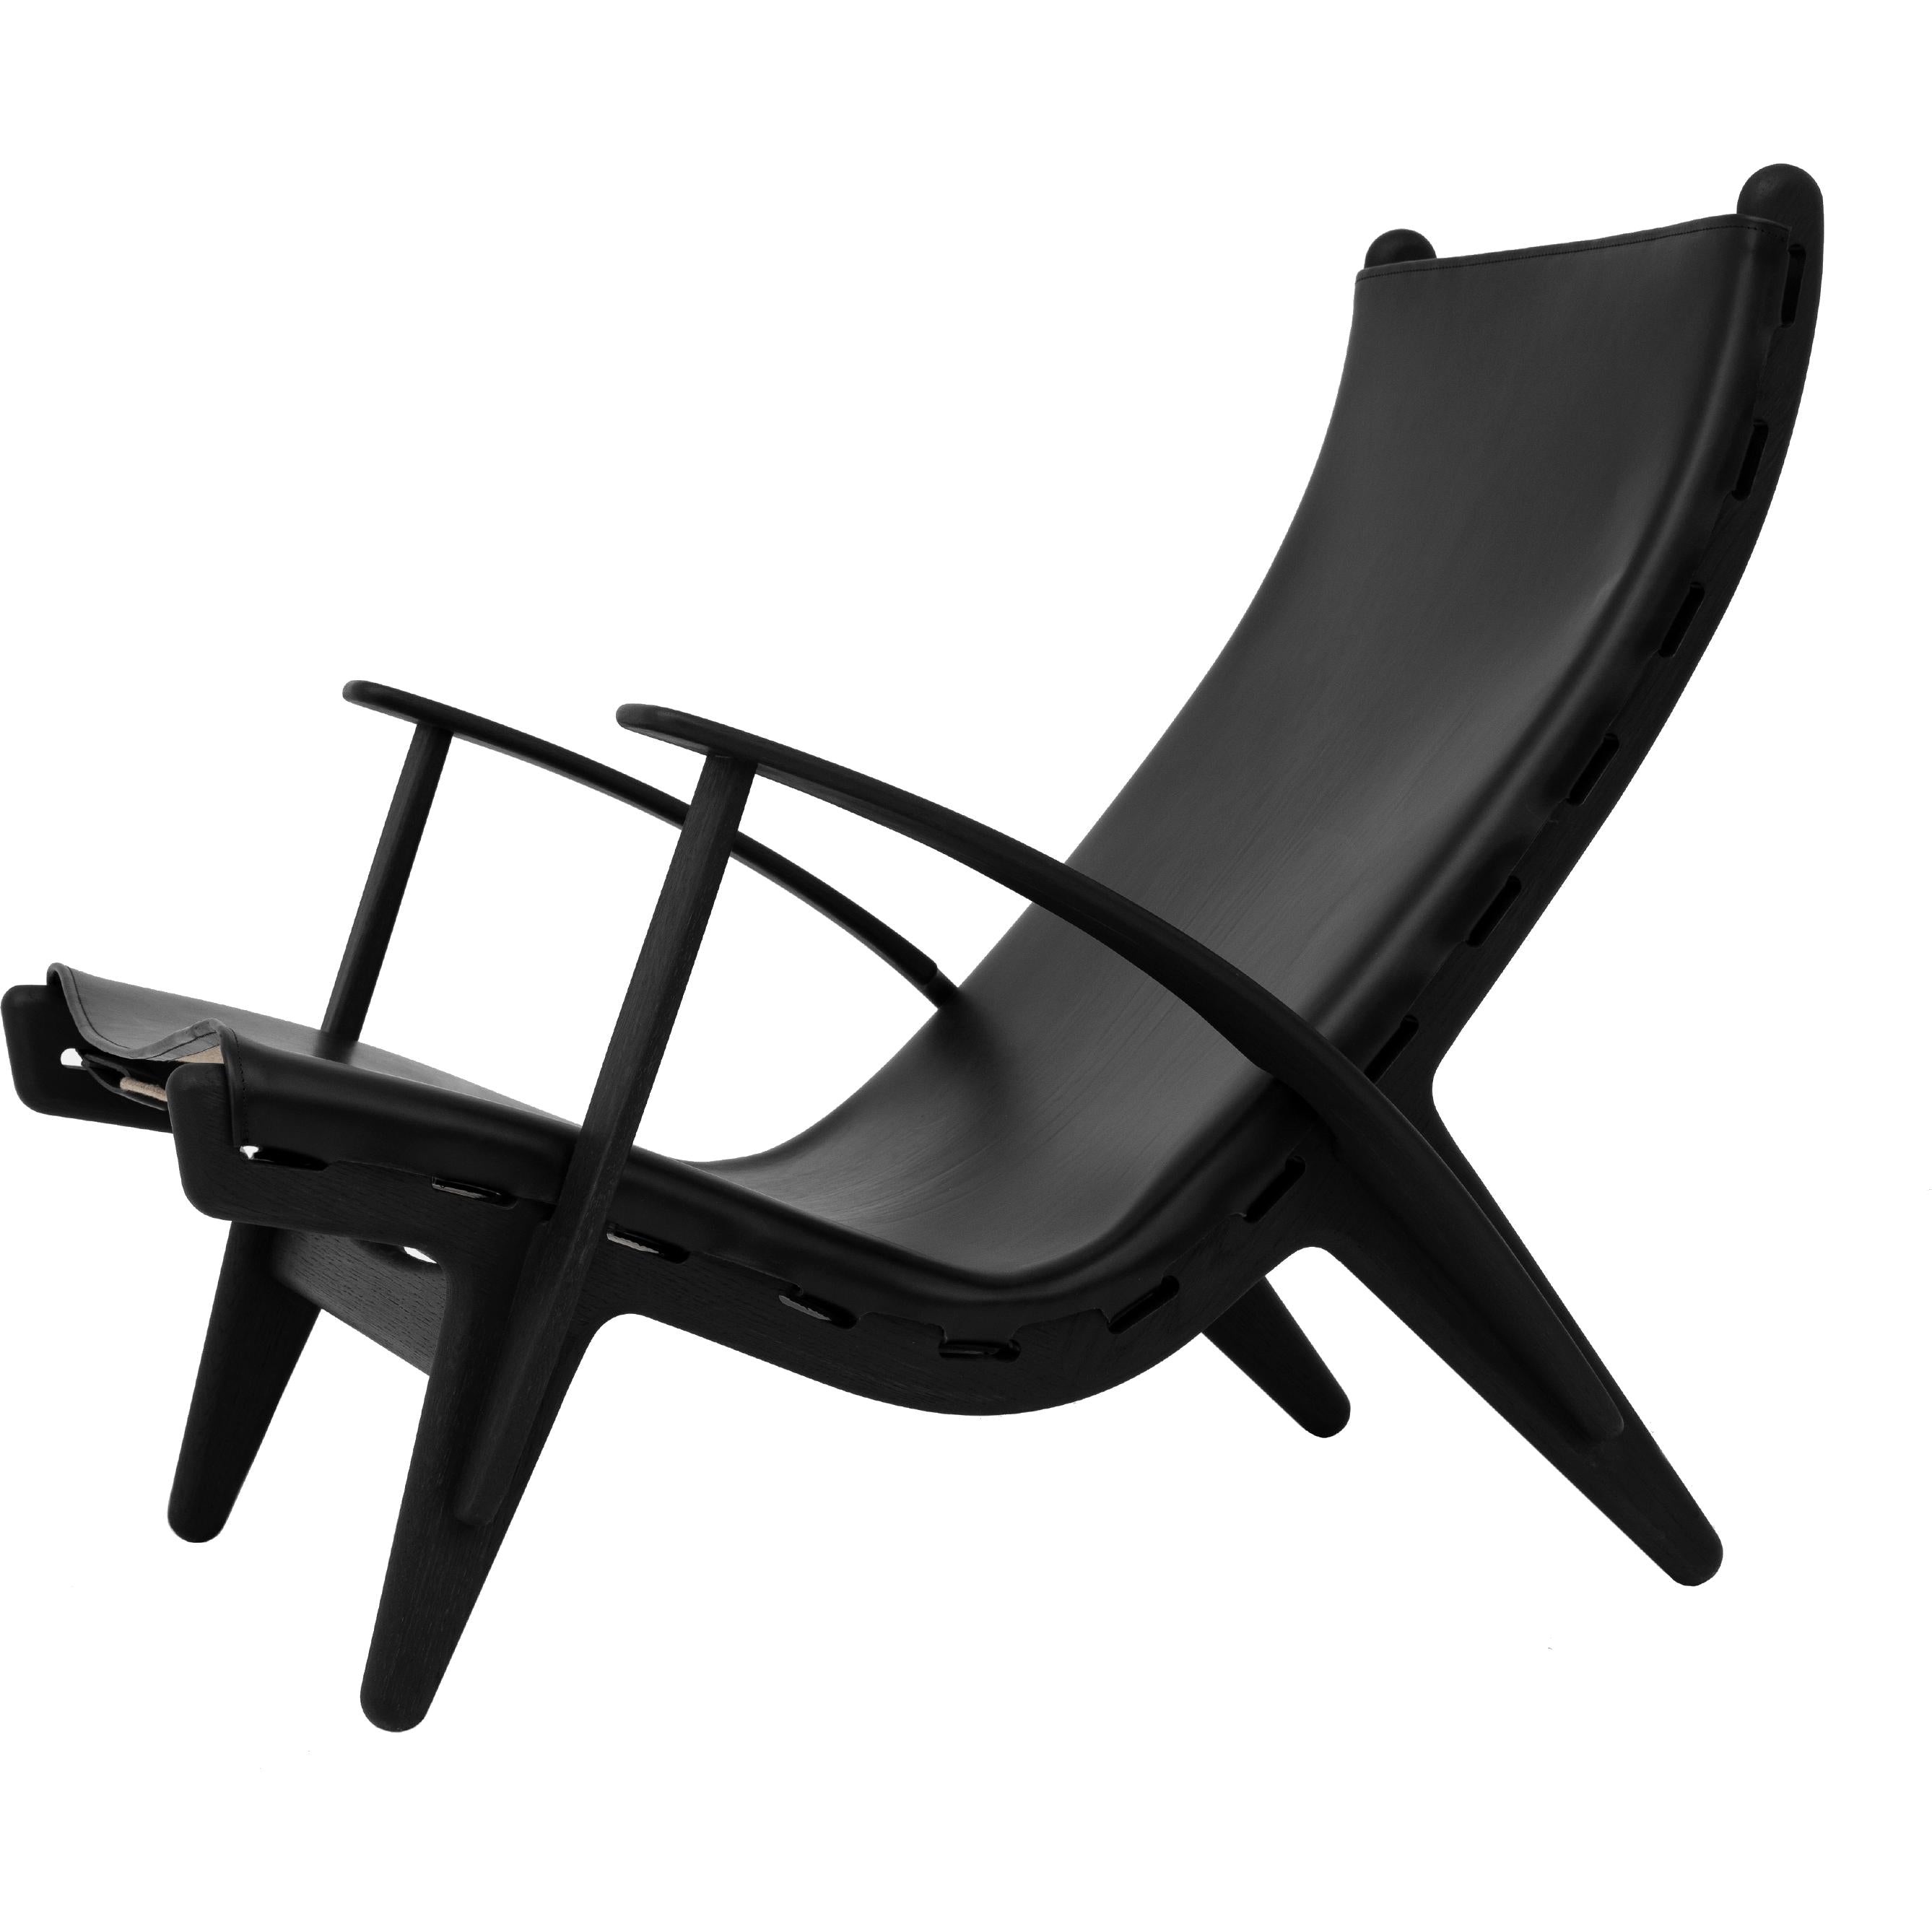 Klassik Studio Pv King's Chair Schwarze Eiche gebeizt, schwarzes Leder